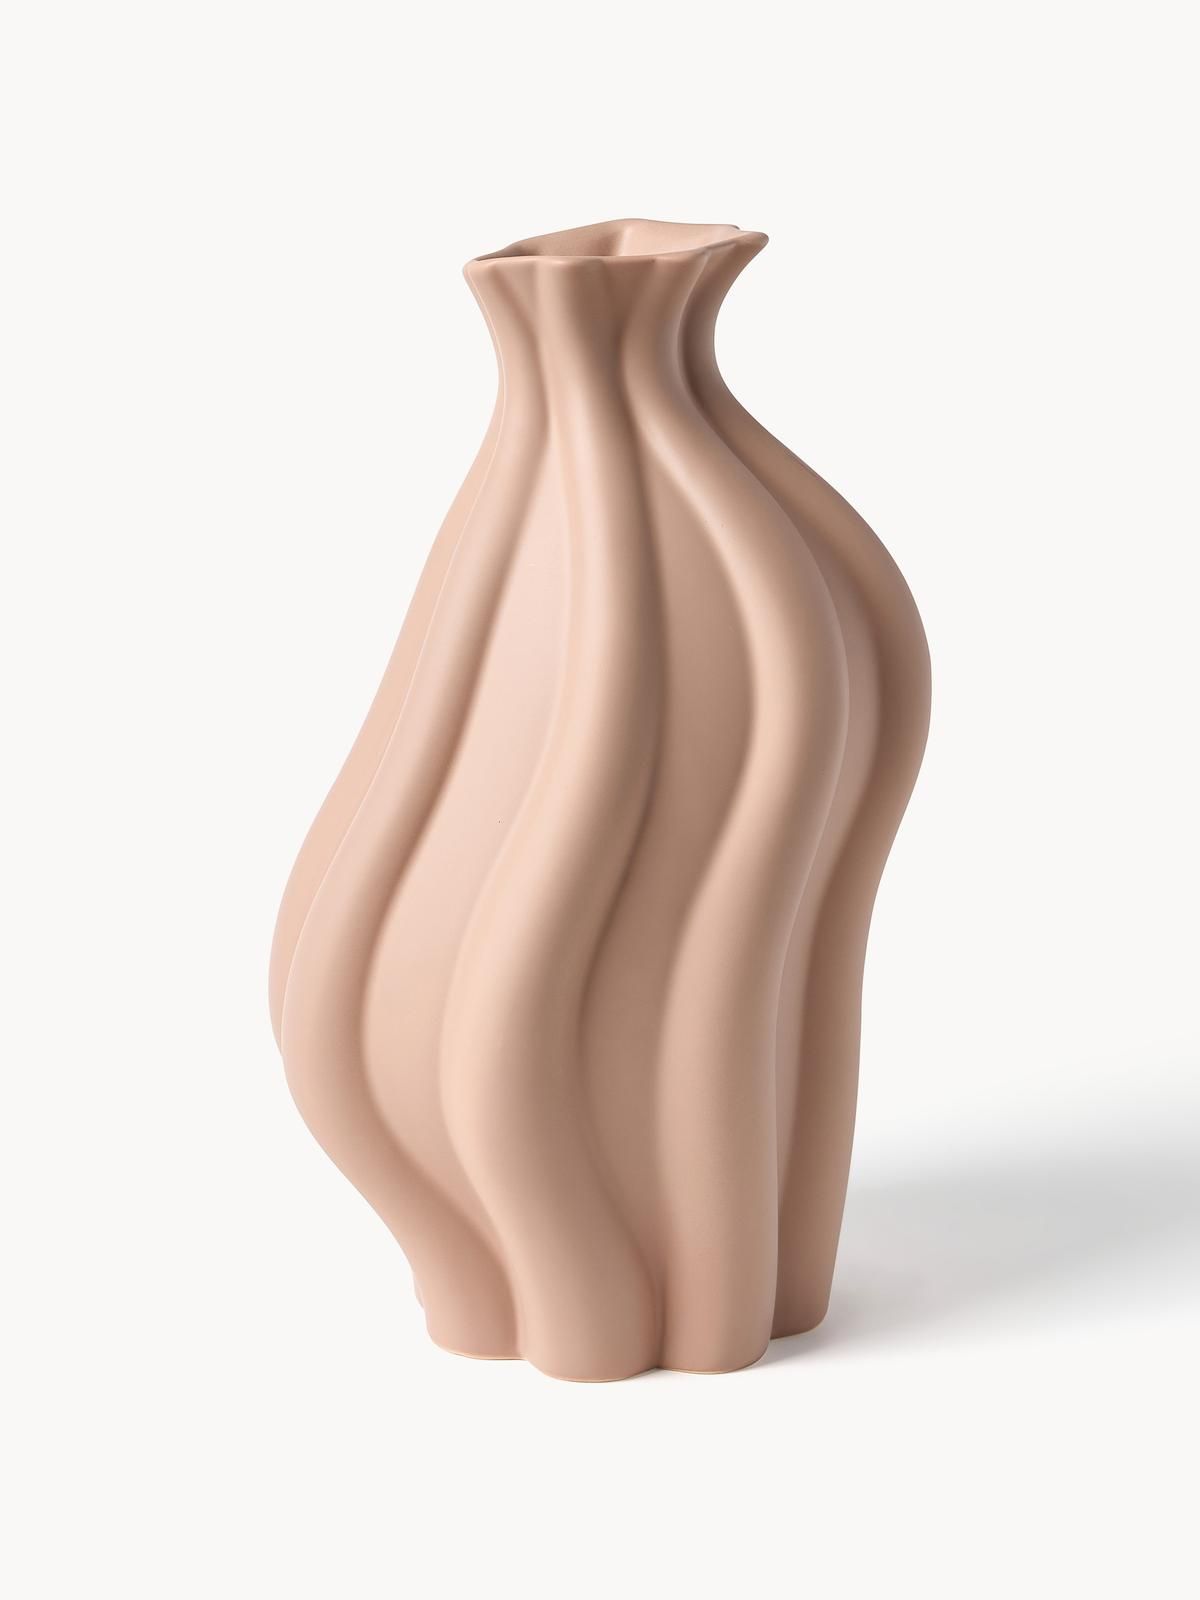 Vase Blom aus Keramik, H 33 cm von Westwing Collection